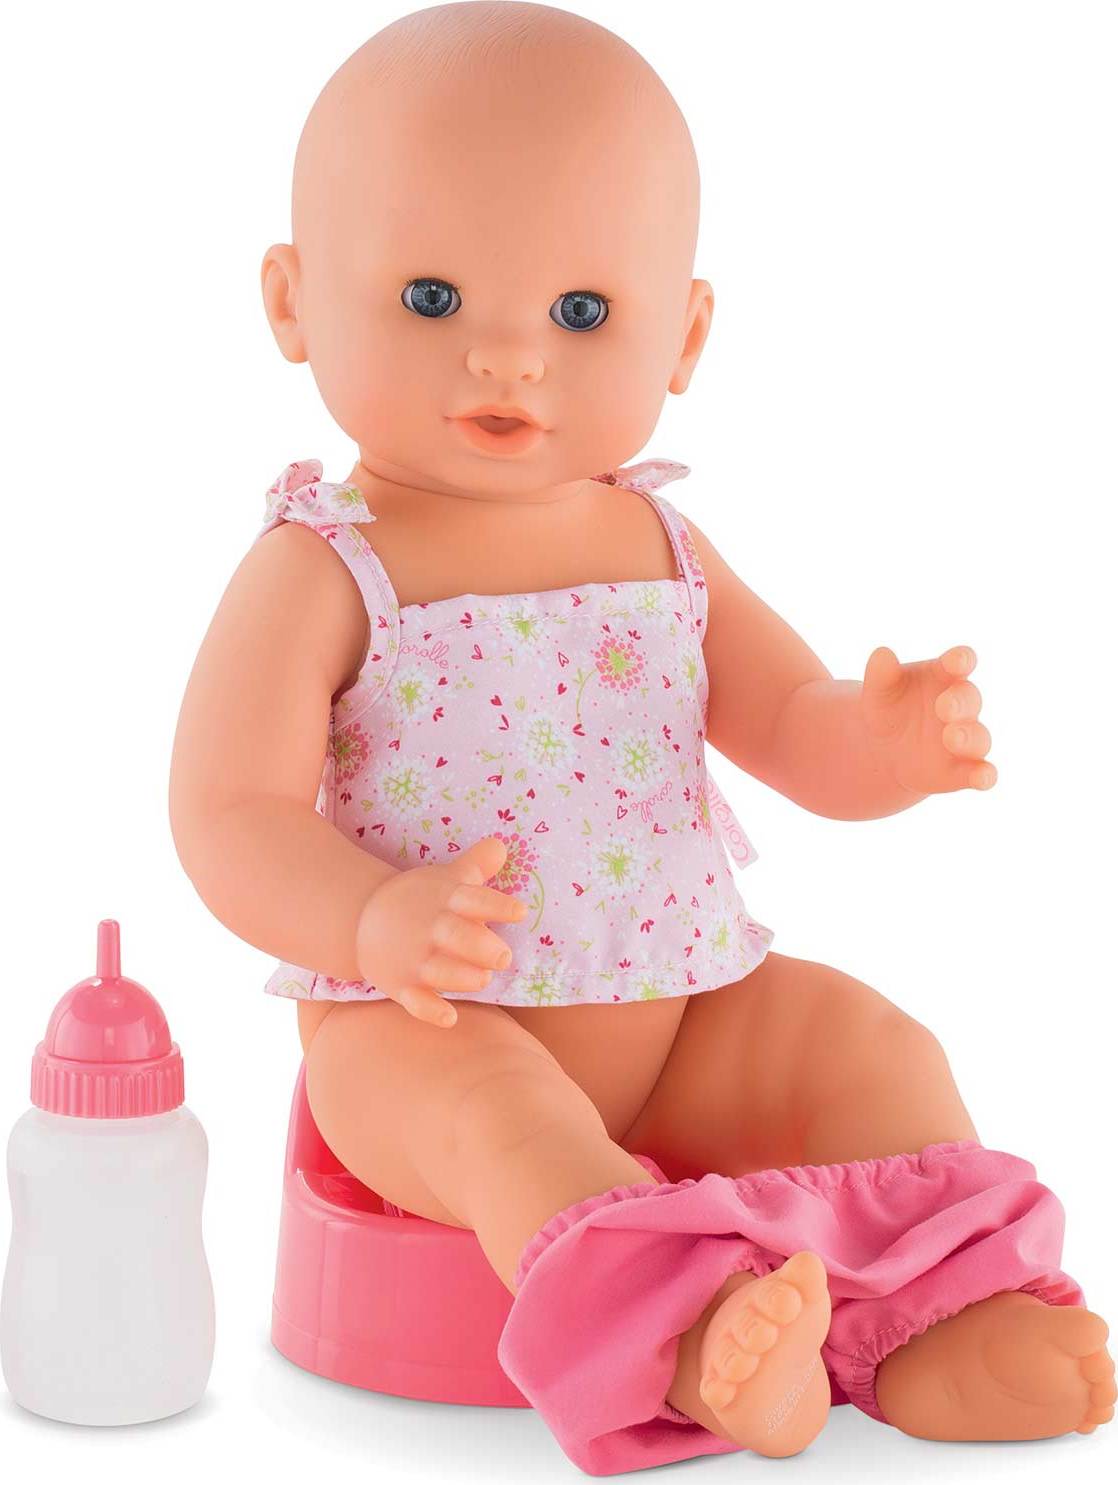 アイボリー×レッド Corolle Graceful Emma Drink-and-Wet Bath Baby Doll 並行輸入品 